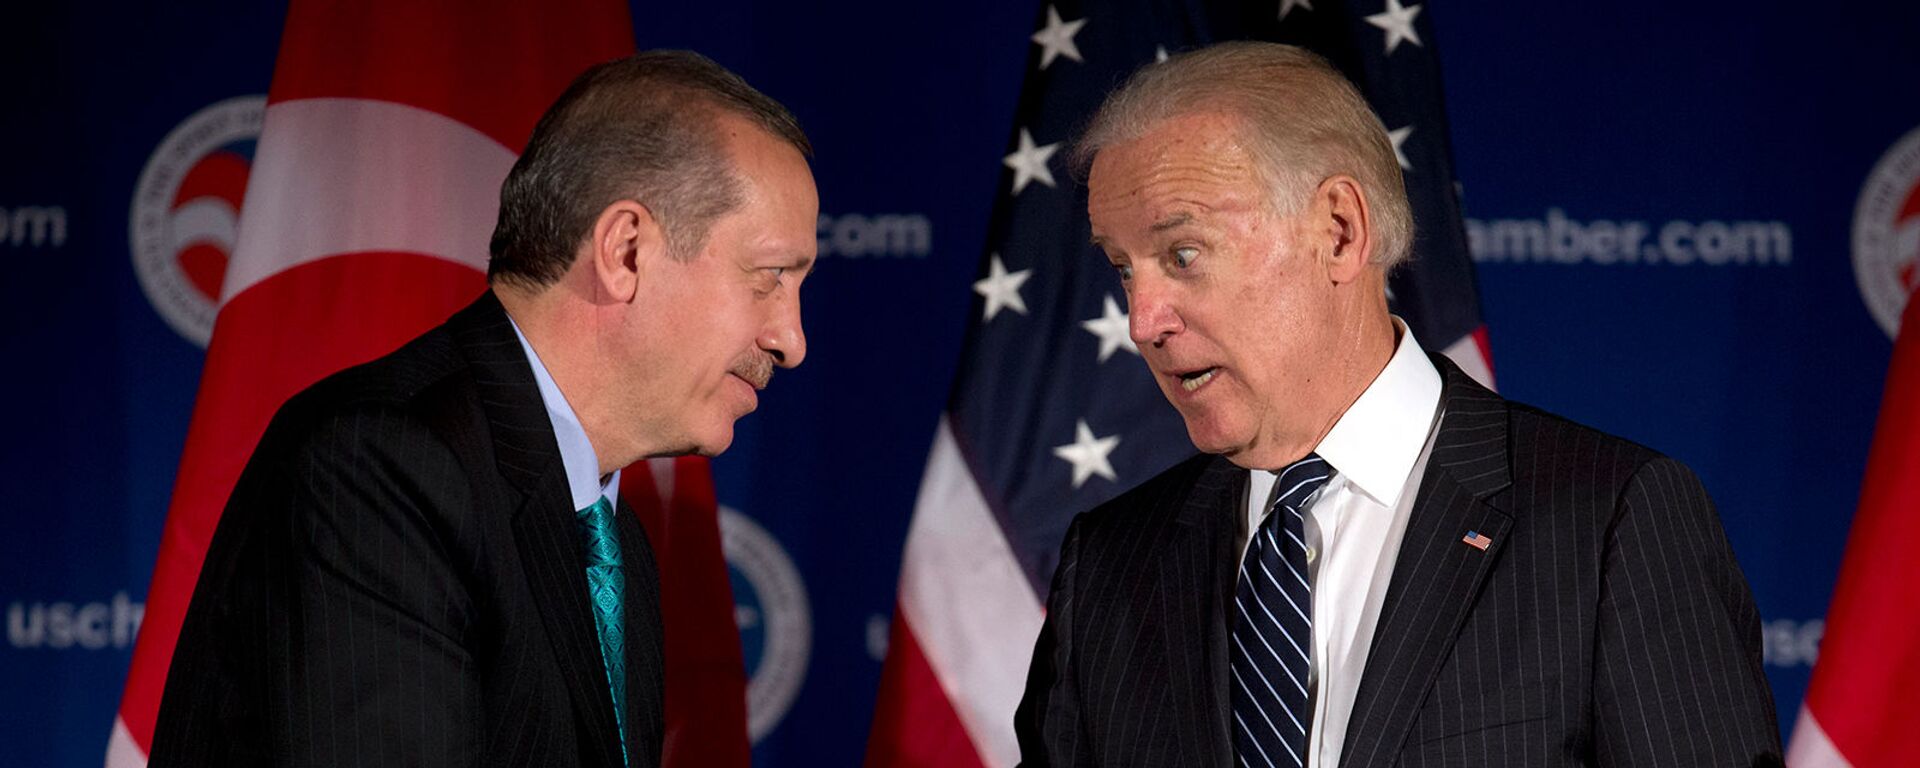 Вице-президент США Джо Байден и премьер-министр Турции Реджеп Тайип Эрдоган приветствуют друг друга во время круглого стола, организованного Торговой палатой США (16 мая 2013). Вашингтон - Sputnik Армения, 1920, 15.06.2021